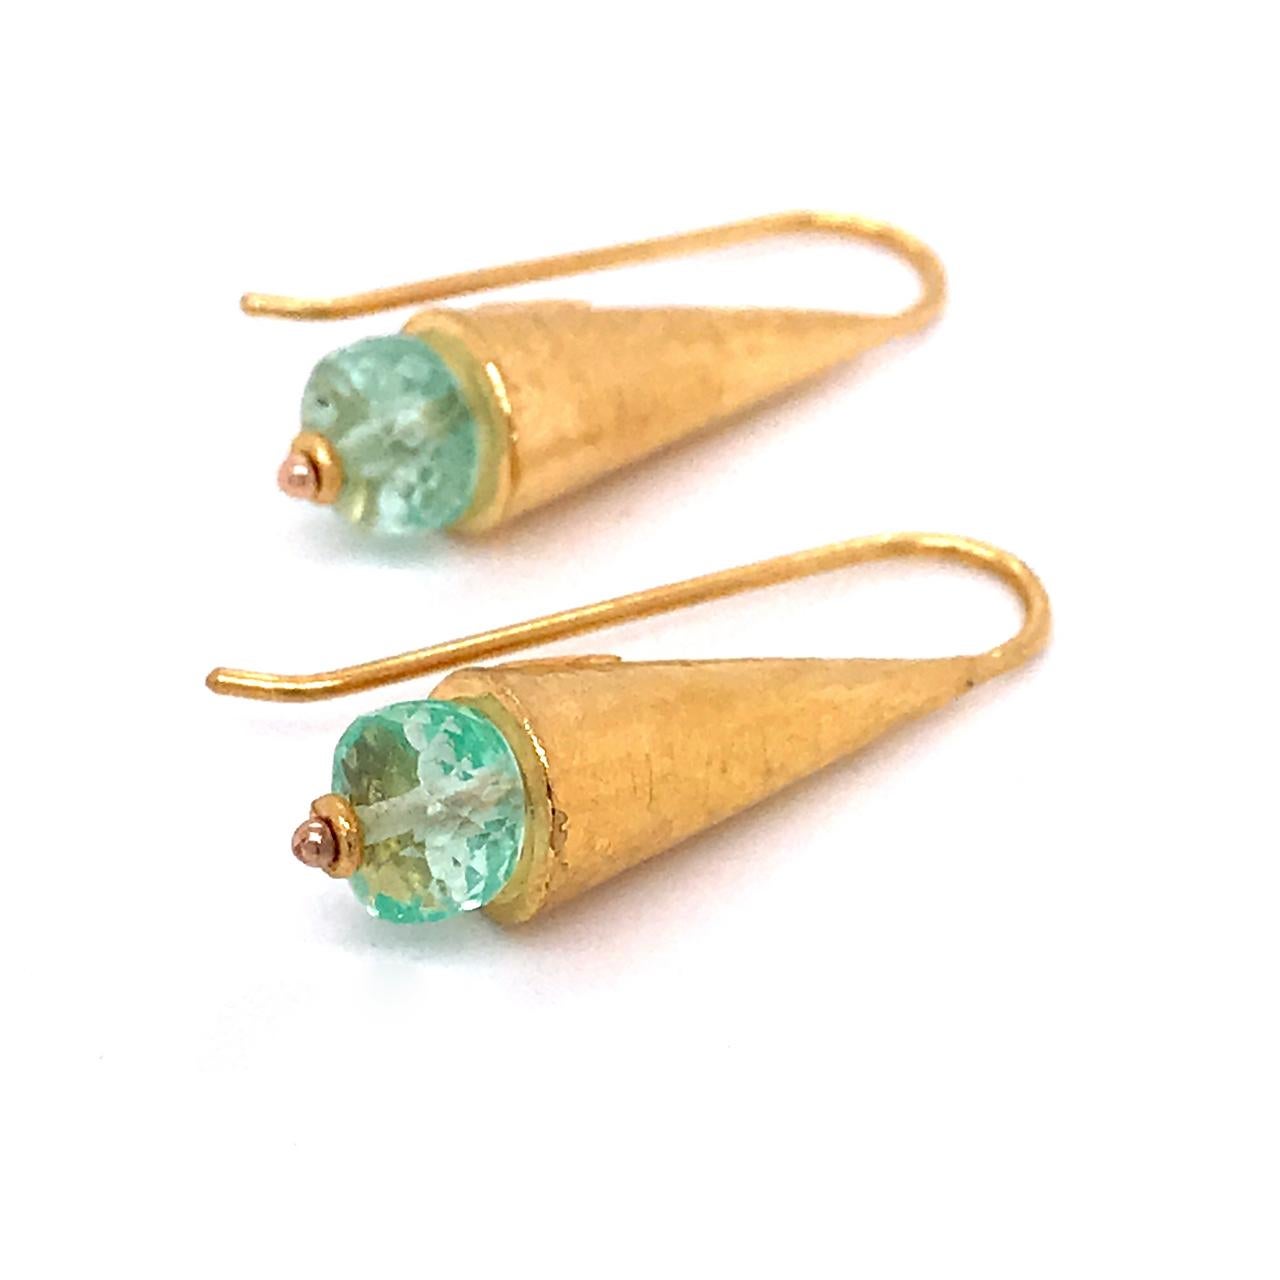 Ein sehr schönes Paar ARA-Ohrringe aus hochkarätigem Gold und Smaragd.

Die Ohrringe, die an das ägyptische Revival oder das antike Mittelmeer erinnern, bestehen aus kegelförmigen, handgehämmerten Tropfen, die mit facettierten Smaragdperlen im